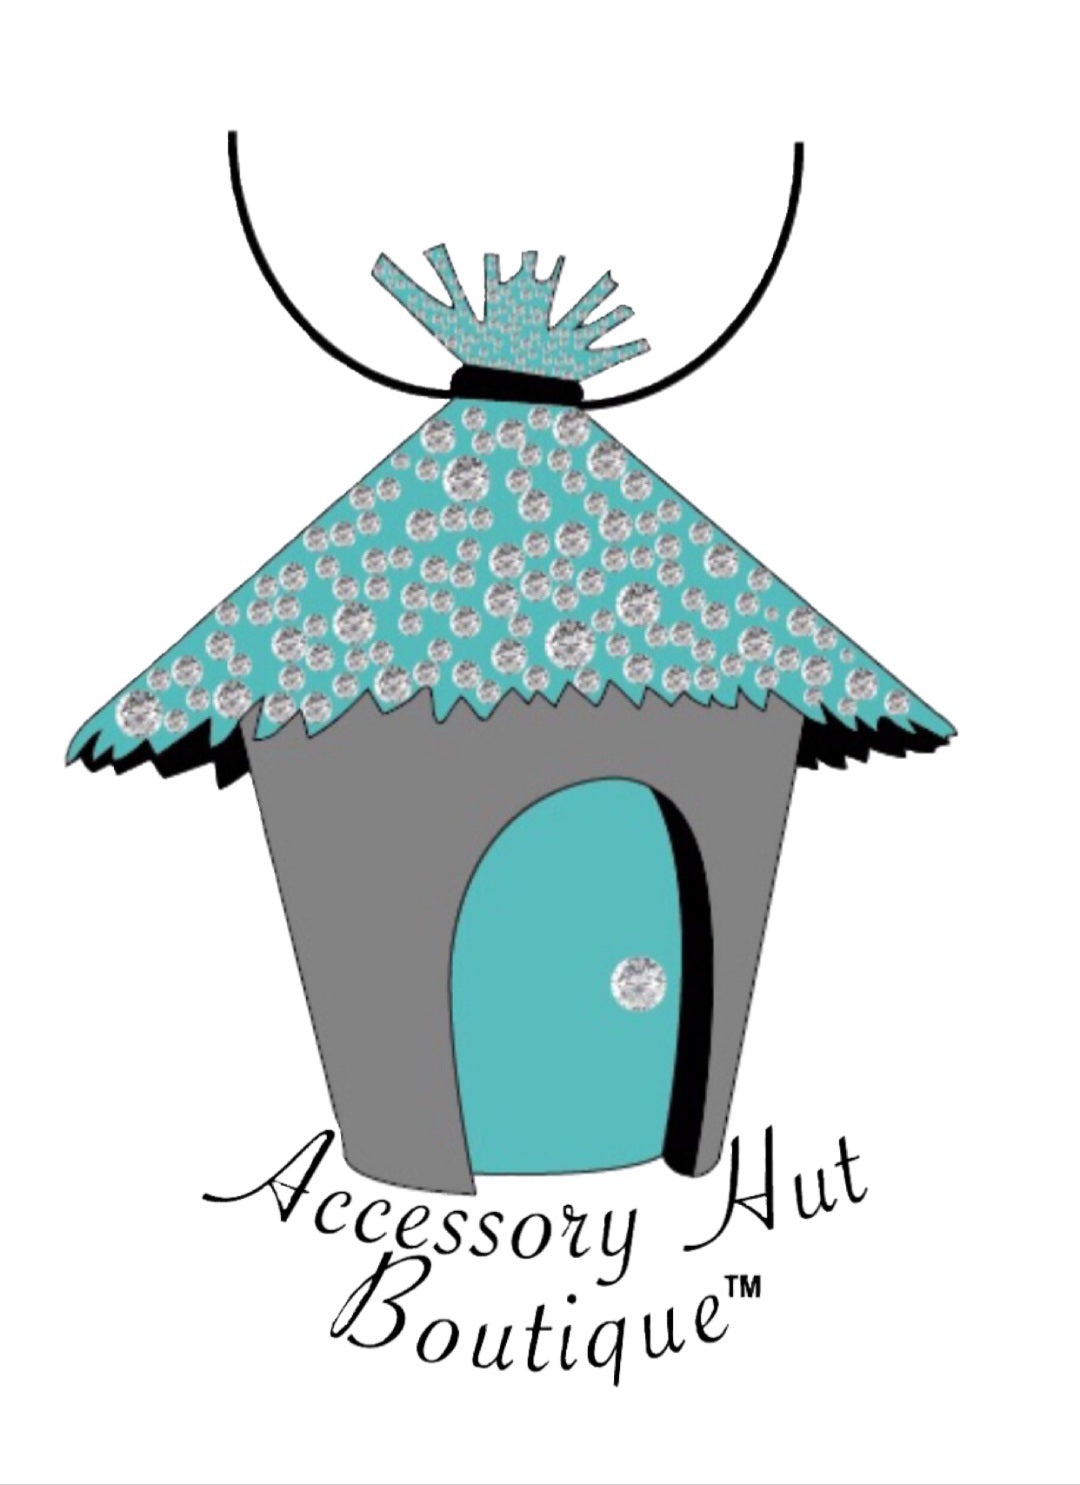 Accessory Hut Boutique